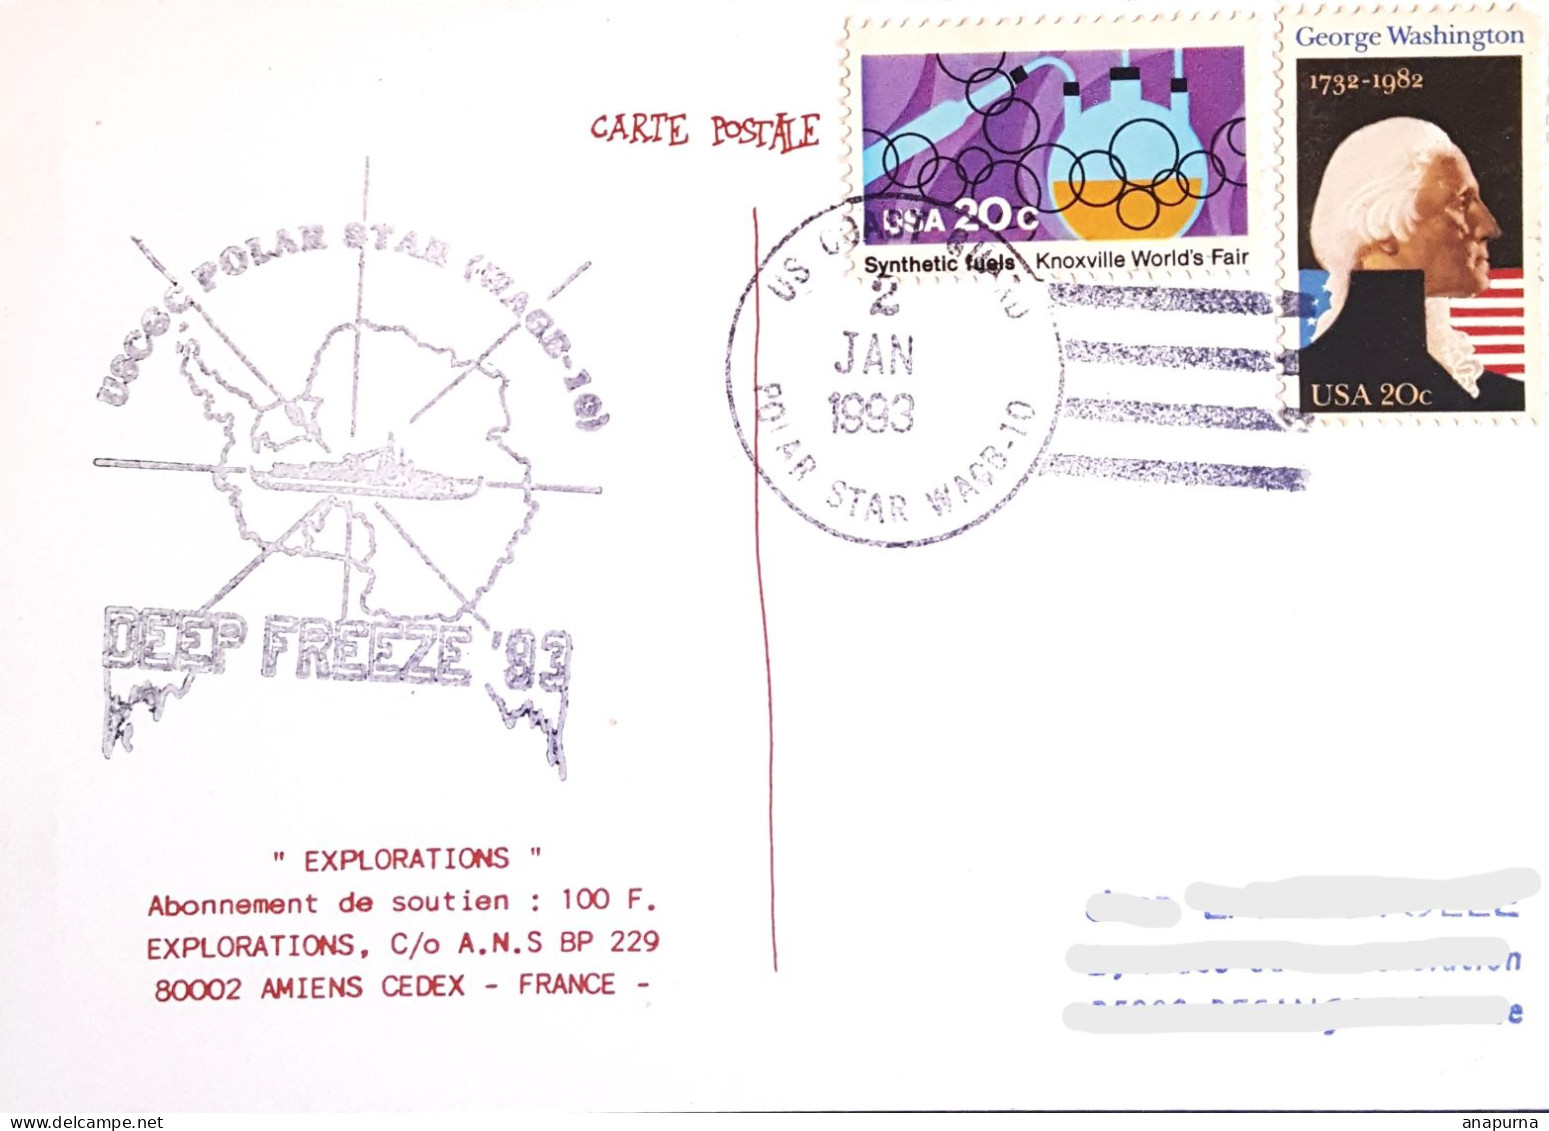 Carte Postale, Posté à Bord Polar Star, Deep Freeze 93, Antarctic, Antarctique, Polaire, Expédition - Programmes Scientifiques